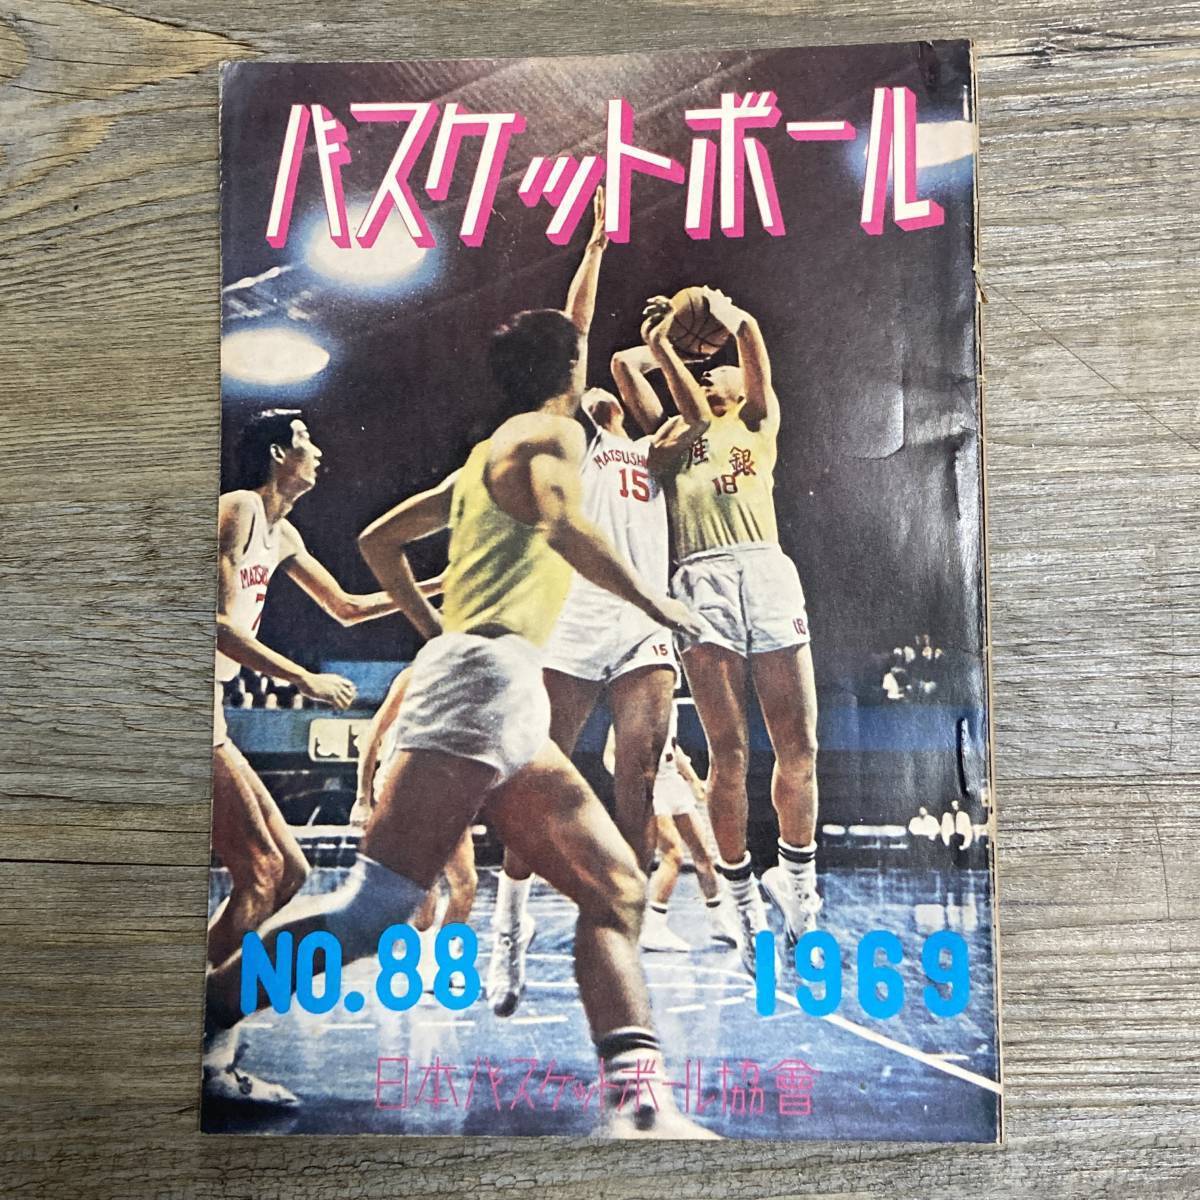 S-3065# баскетбол No.88 1969 год 9 месяц 30 день выпуск # восток Азия реальный индустрия . состязание собрание соревнование результат оценка # Япония баскетбол ассоциация #